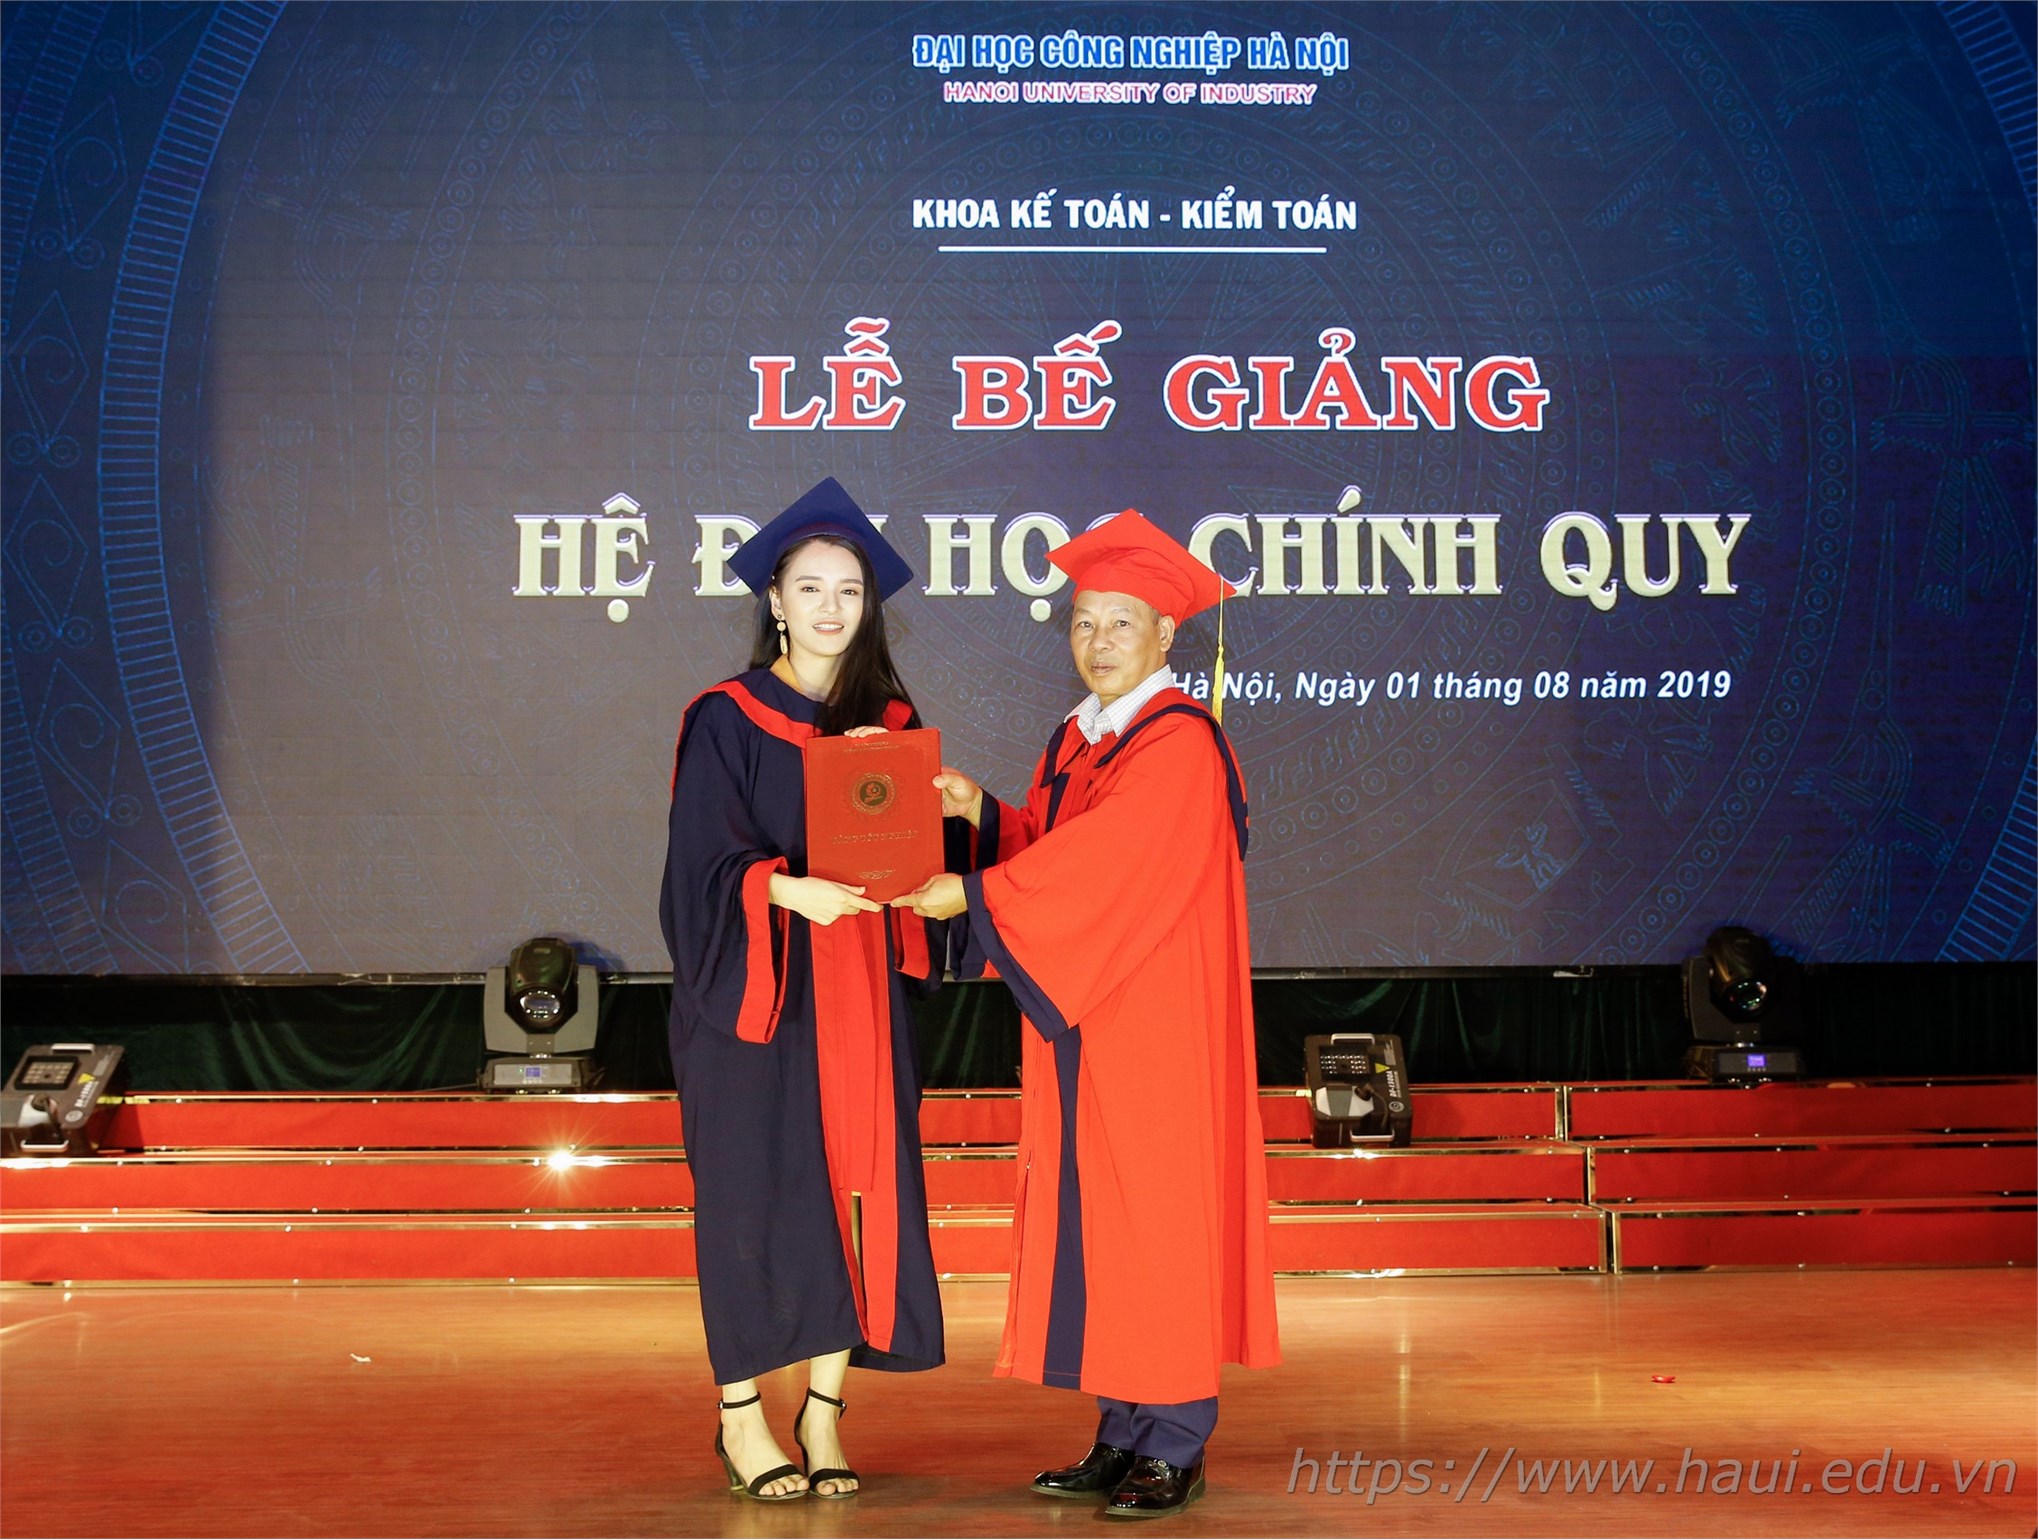 Lễ Bế giảng và trao bằng tốt nghiệp cử nhân cho sinh viên Đại học Công nghiệp Hà Nội năm 2019